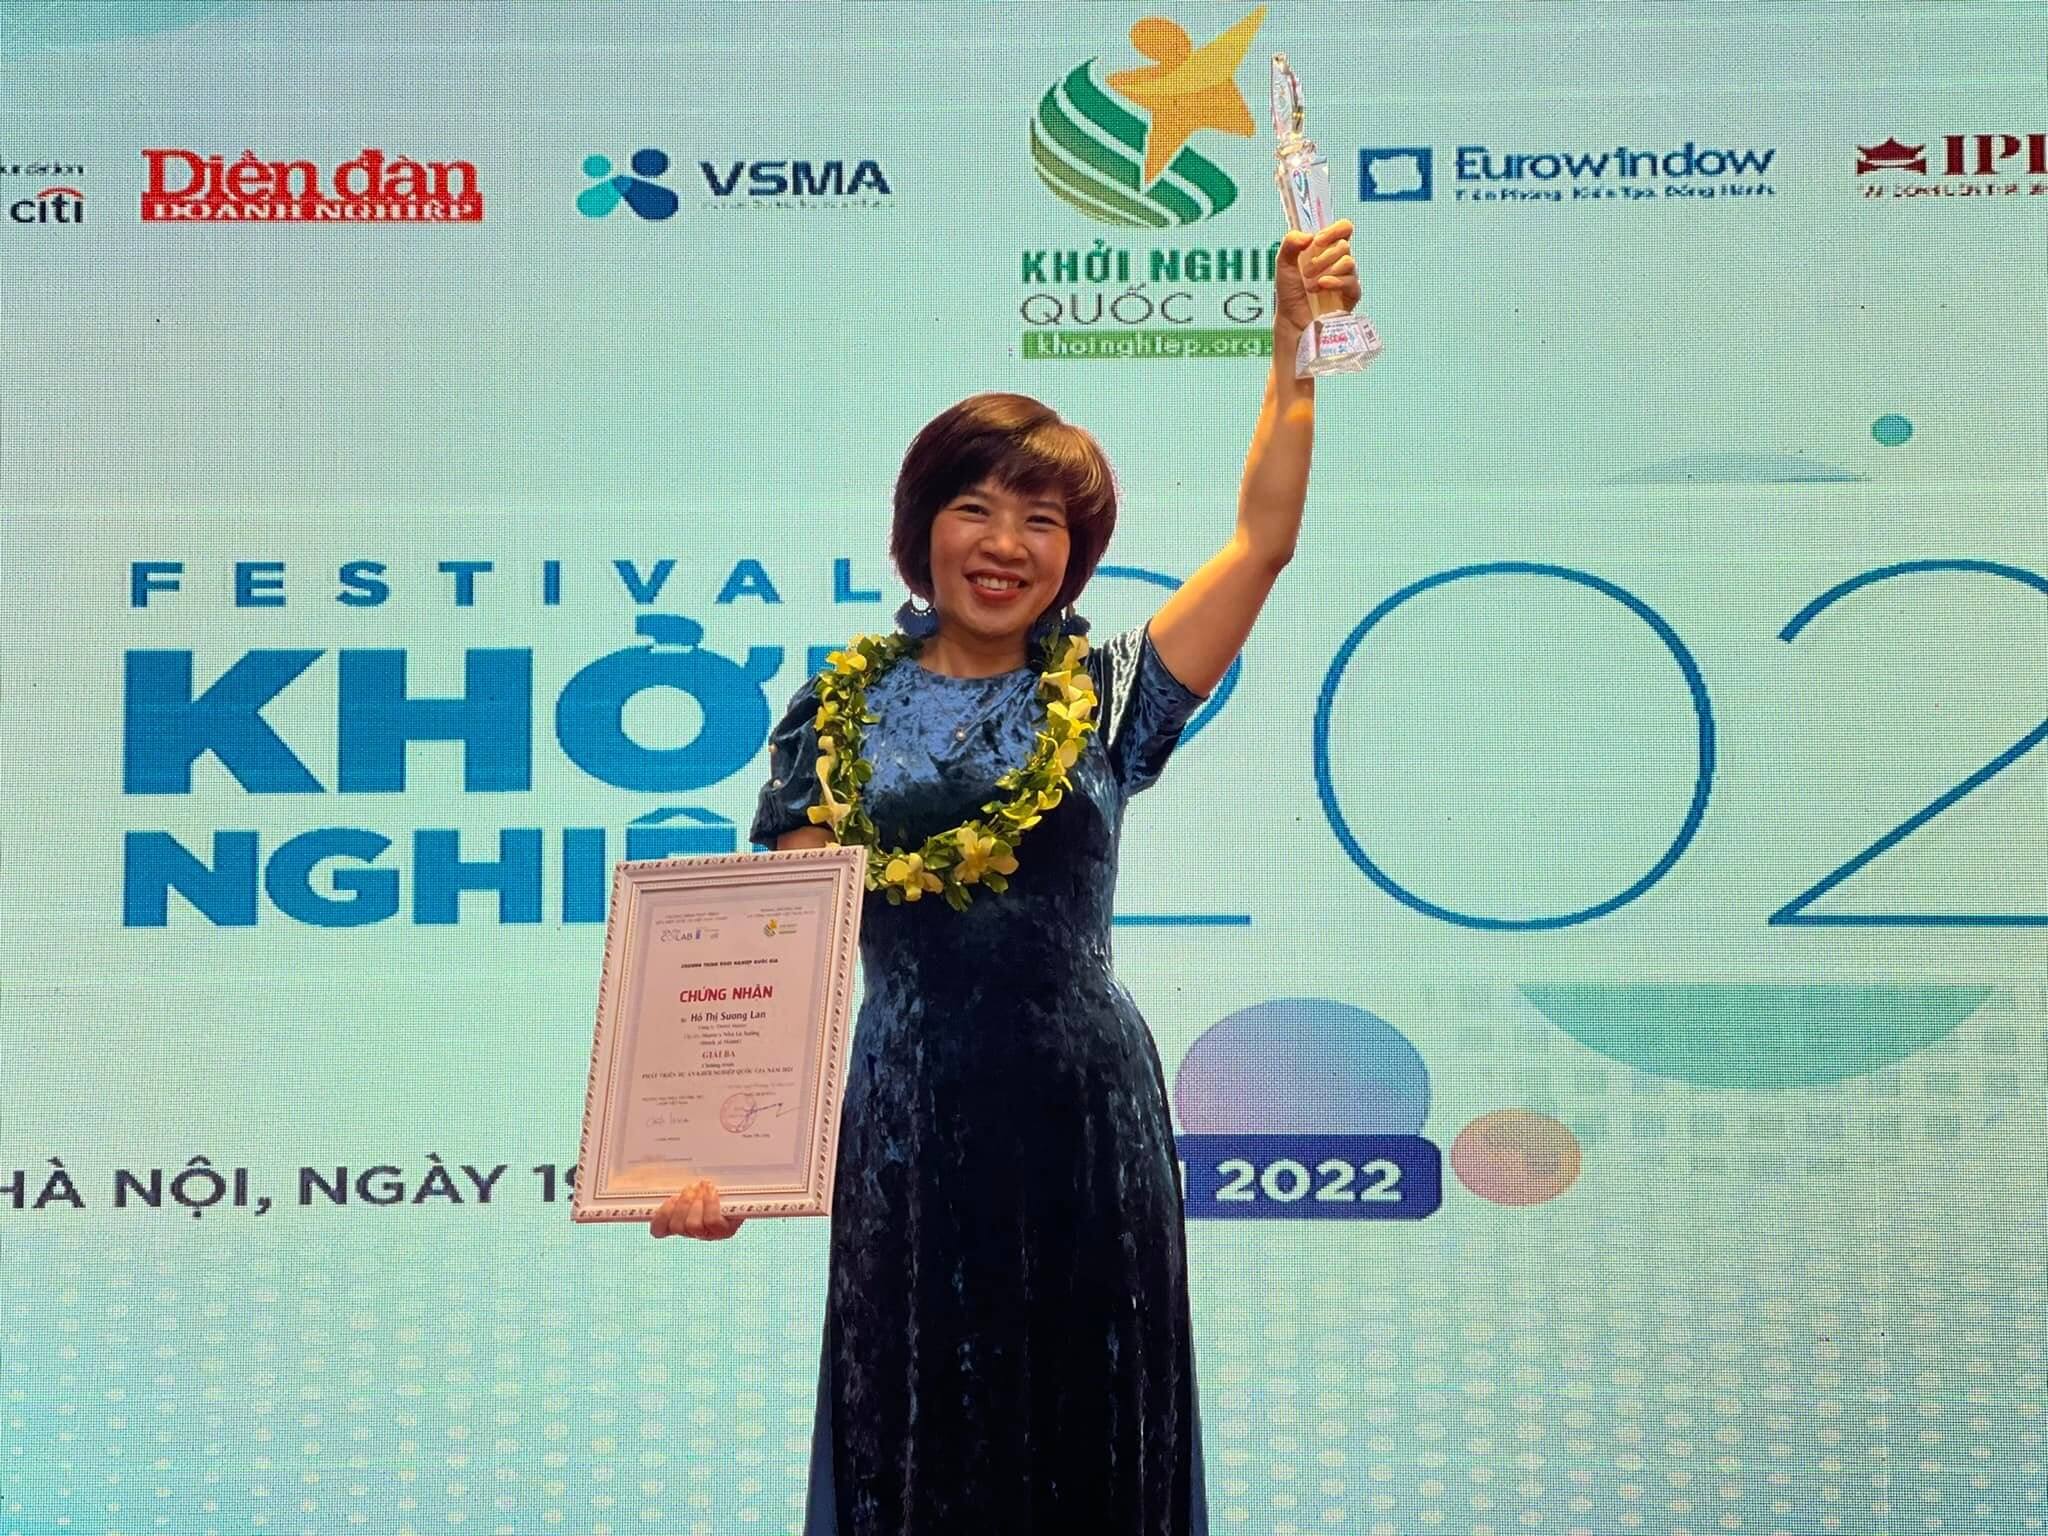 Marie’s vinh dự đạt được giải 3 cuộc thi, vừa ra Hà Nội  nhận giải hồi tháng 1/2022